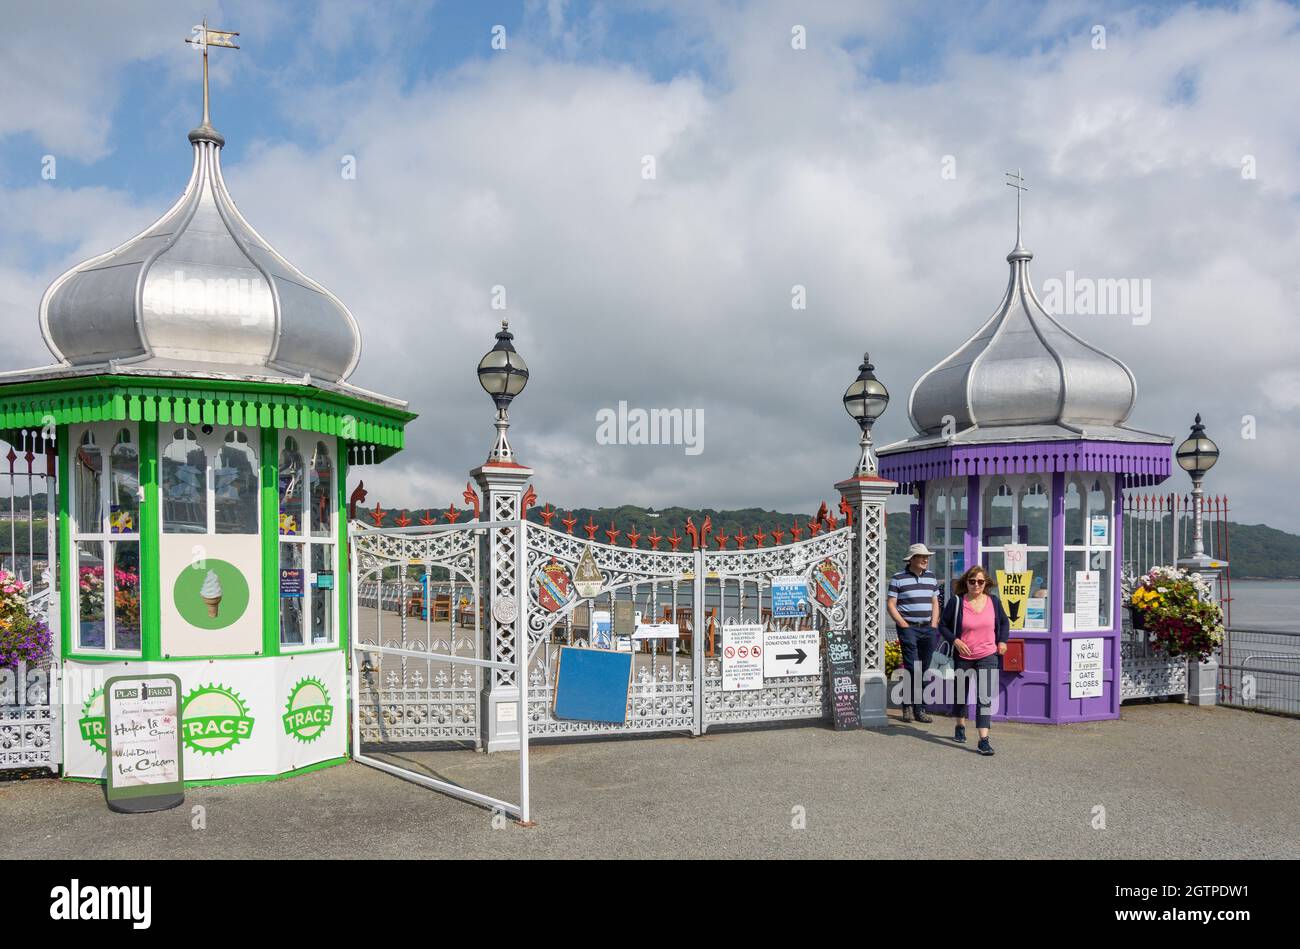 Entrance to Bognor Garth Pier, Garth Road, Bangor, Gwynedd, Wales, United Kingdom Stock Photo